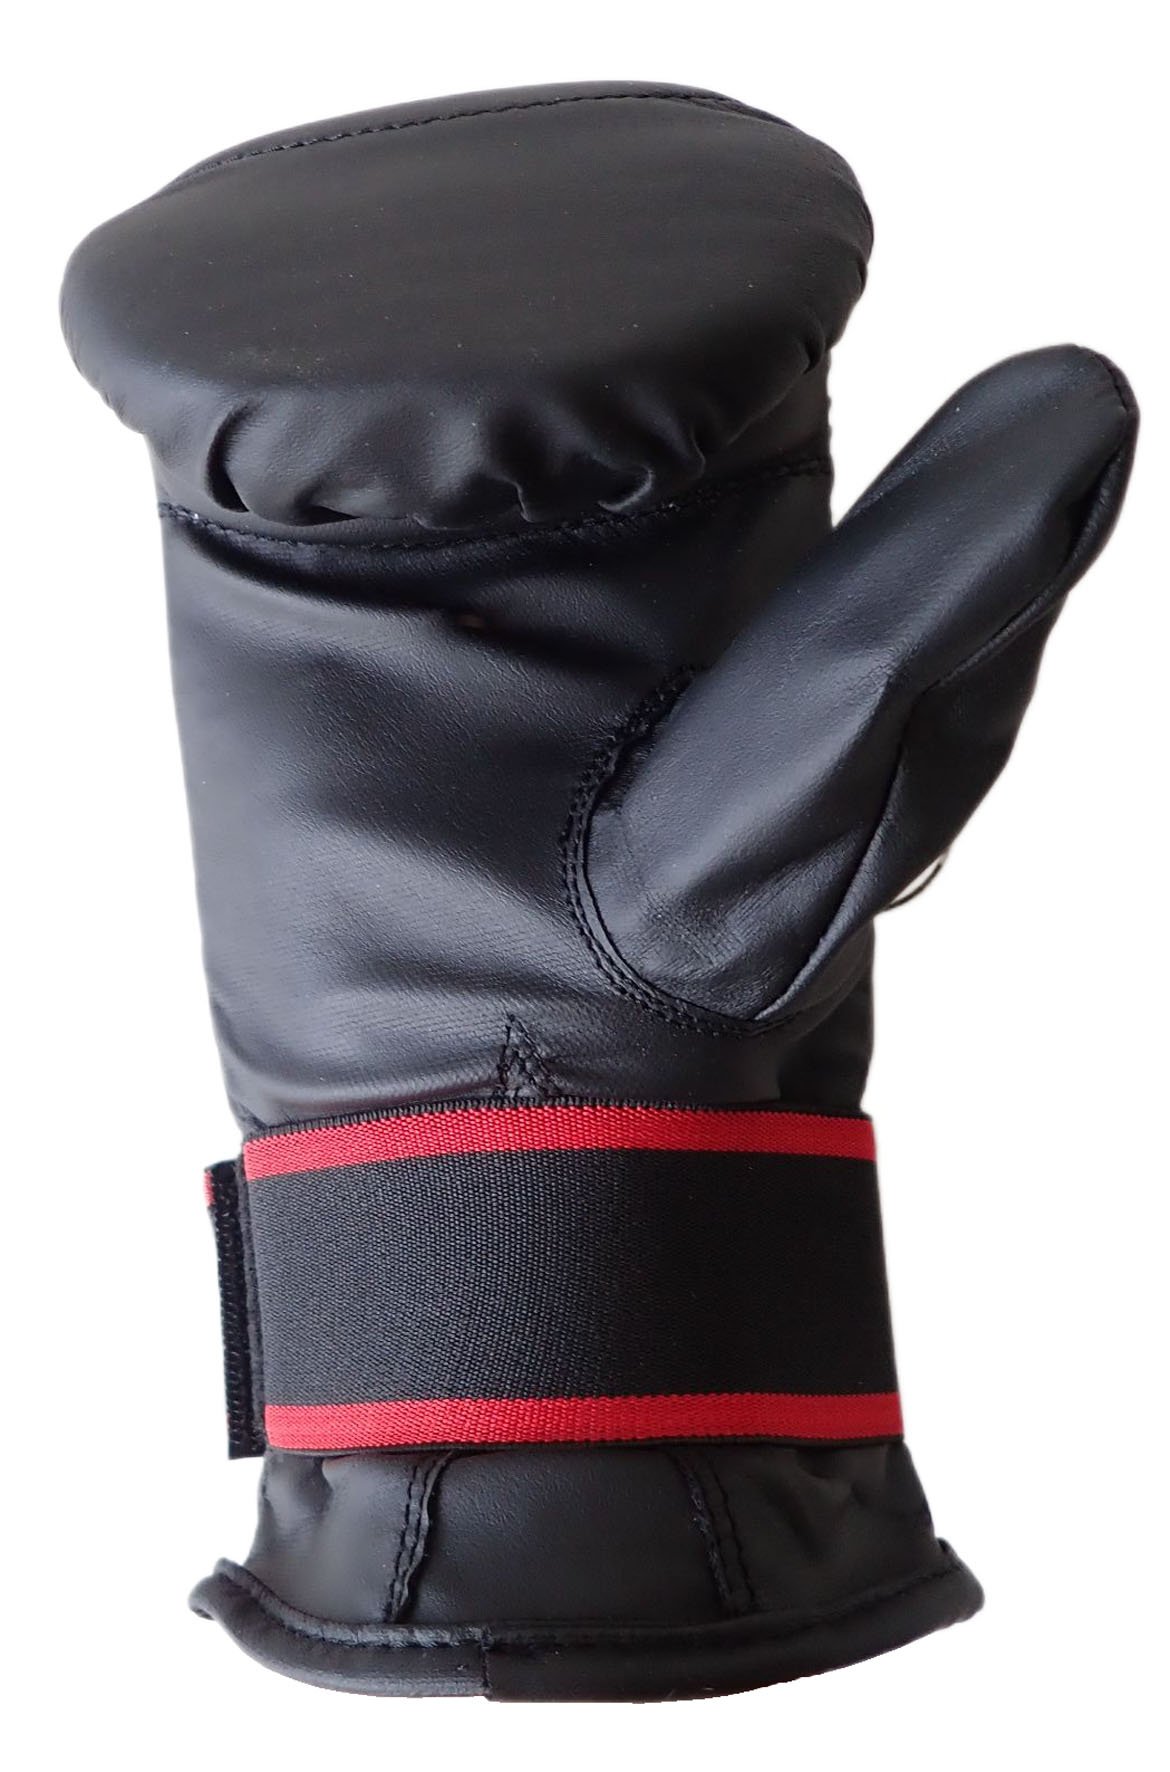 Boxerské rukavice tréninkové pytlovky, vel. S